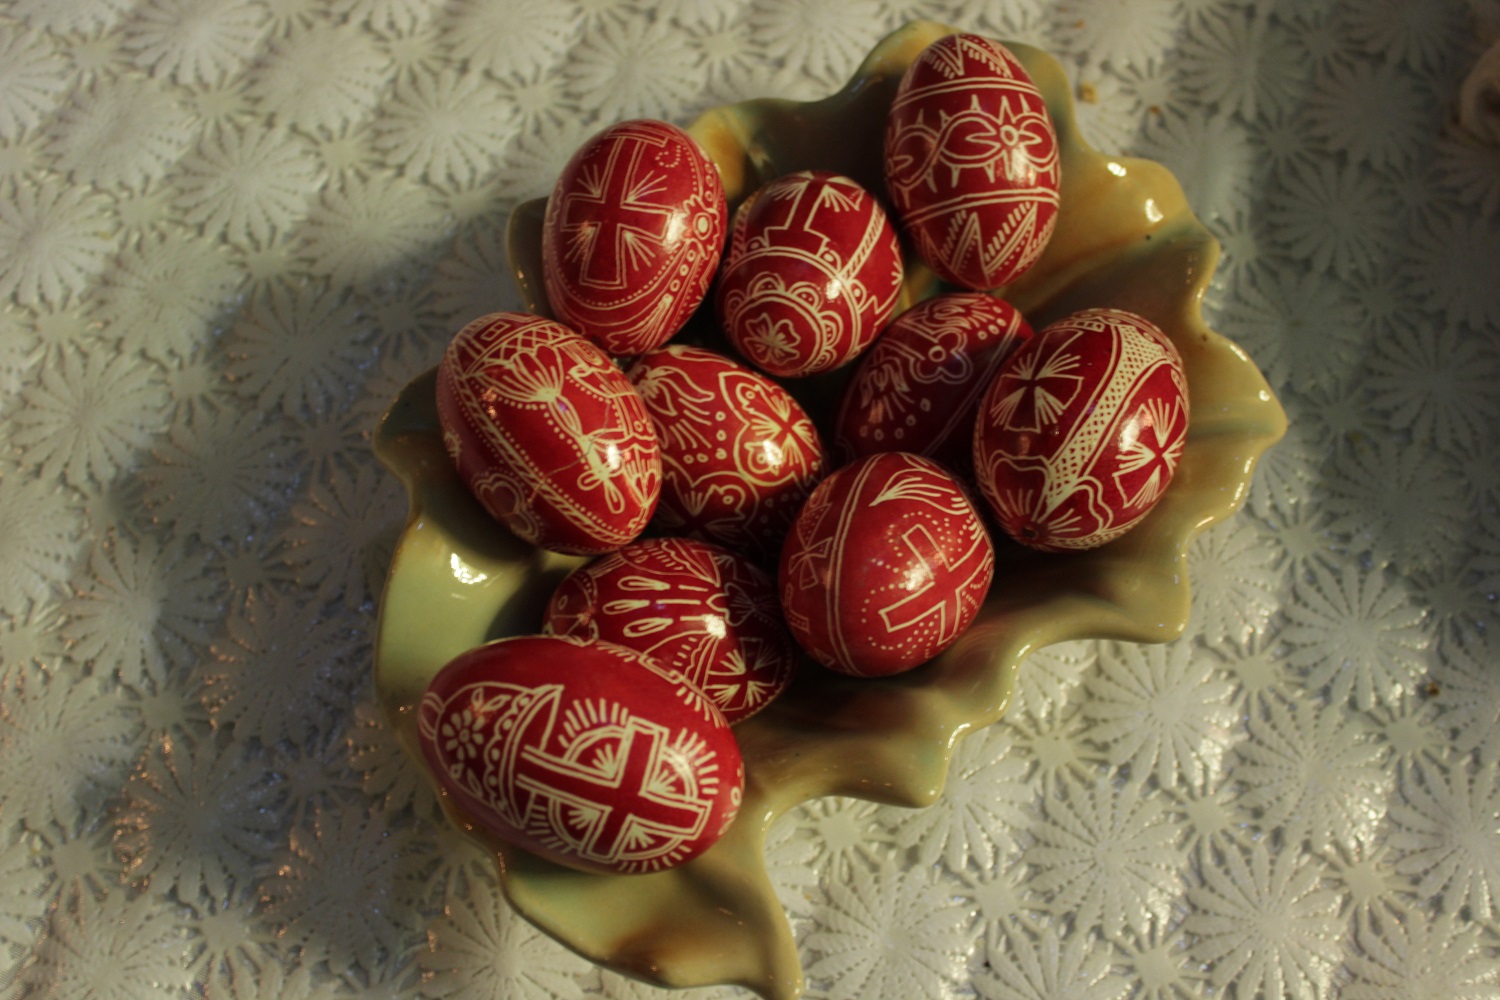 Des œufs peints de la région de Buzau, ici avec des motifs traditionnels de cette région (photo Anamaria Iuga)